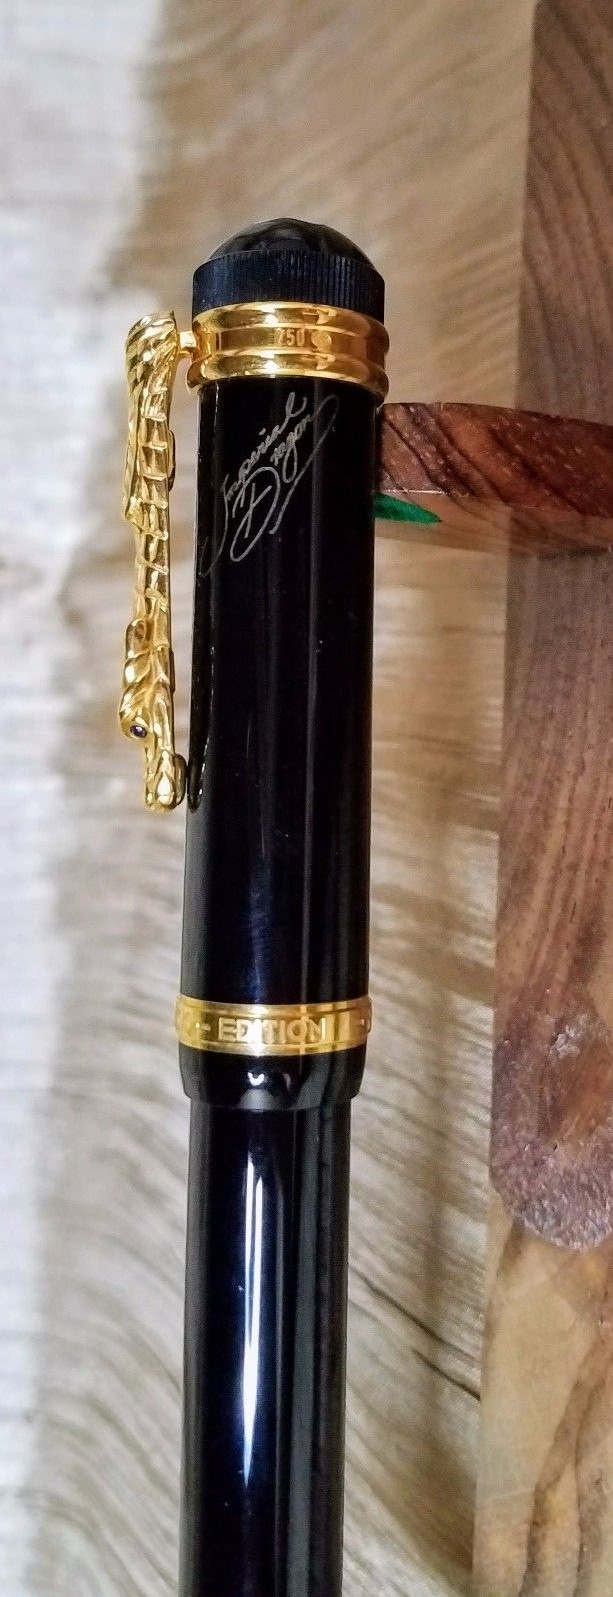 Une sélection de stylos de luxe Montblanc vendus sur eBay